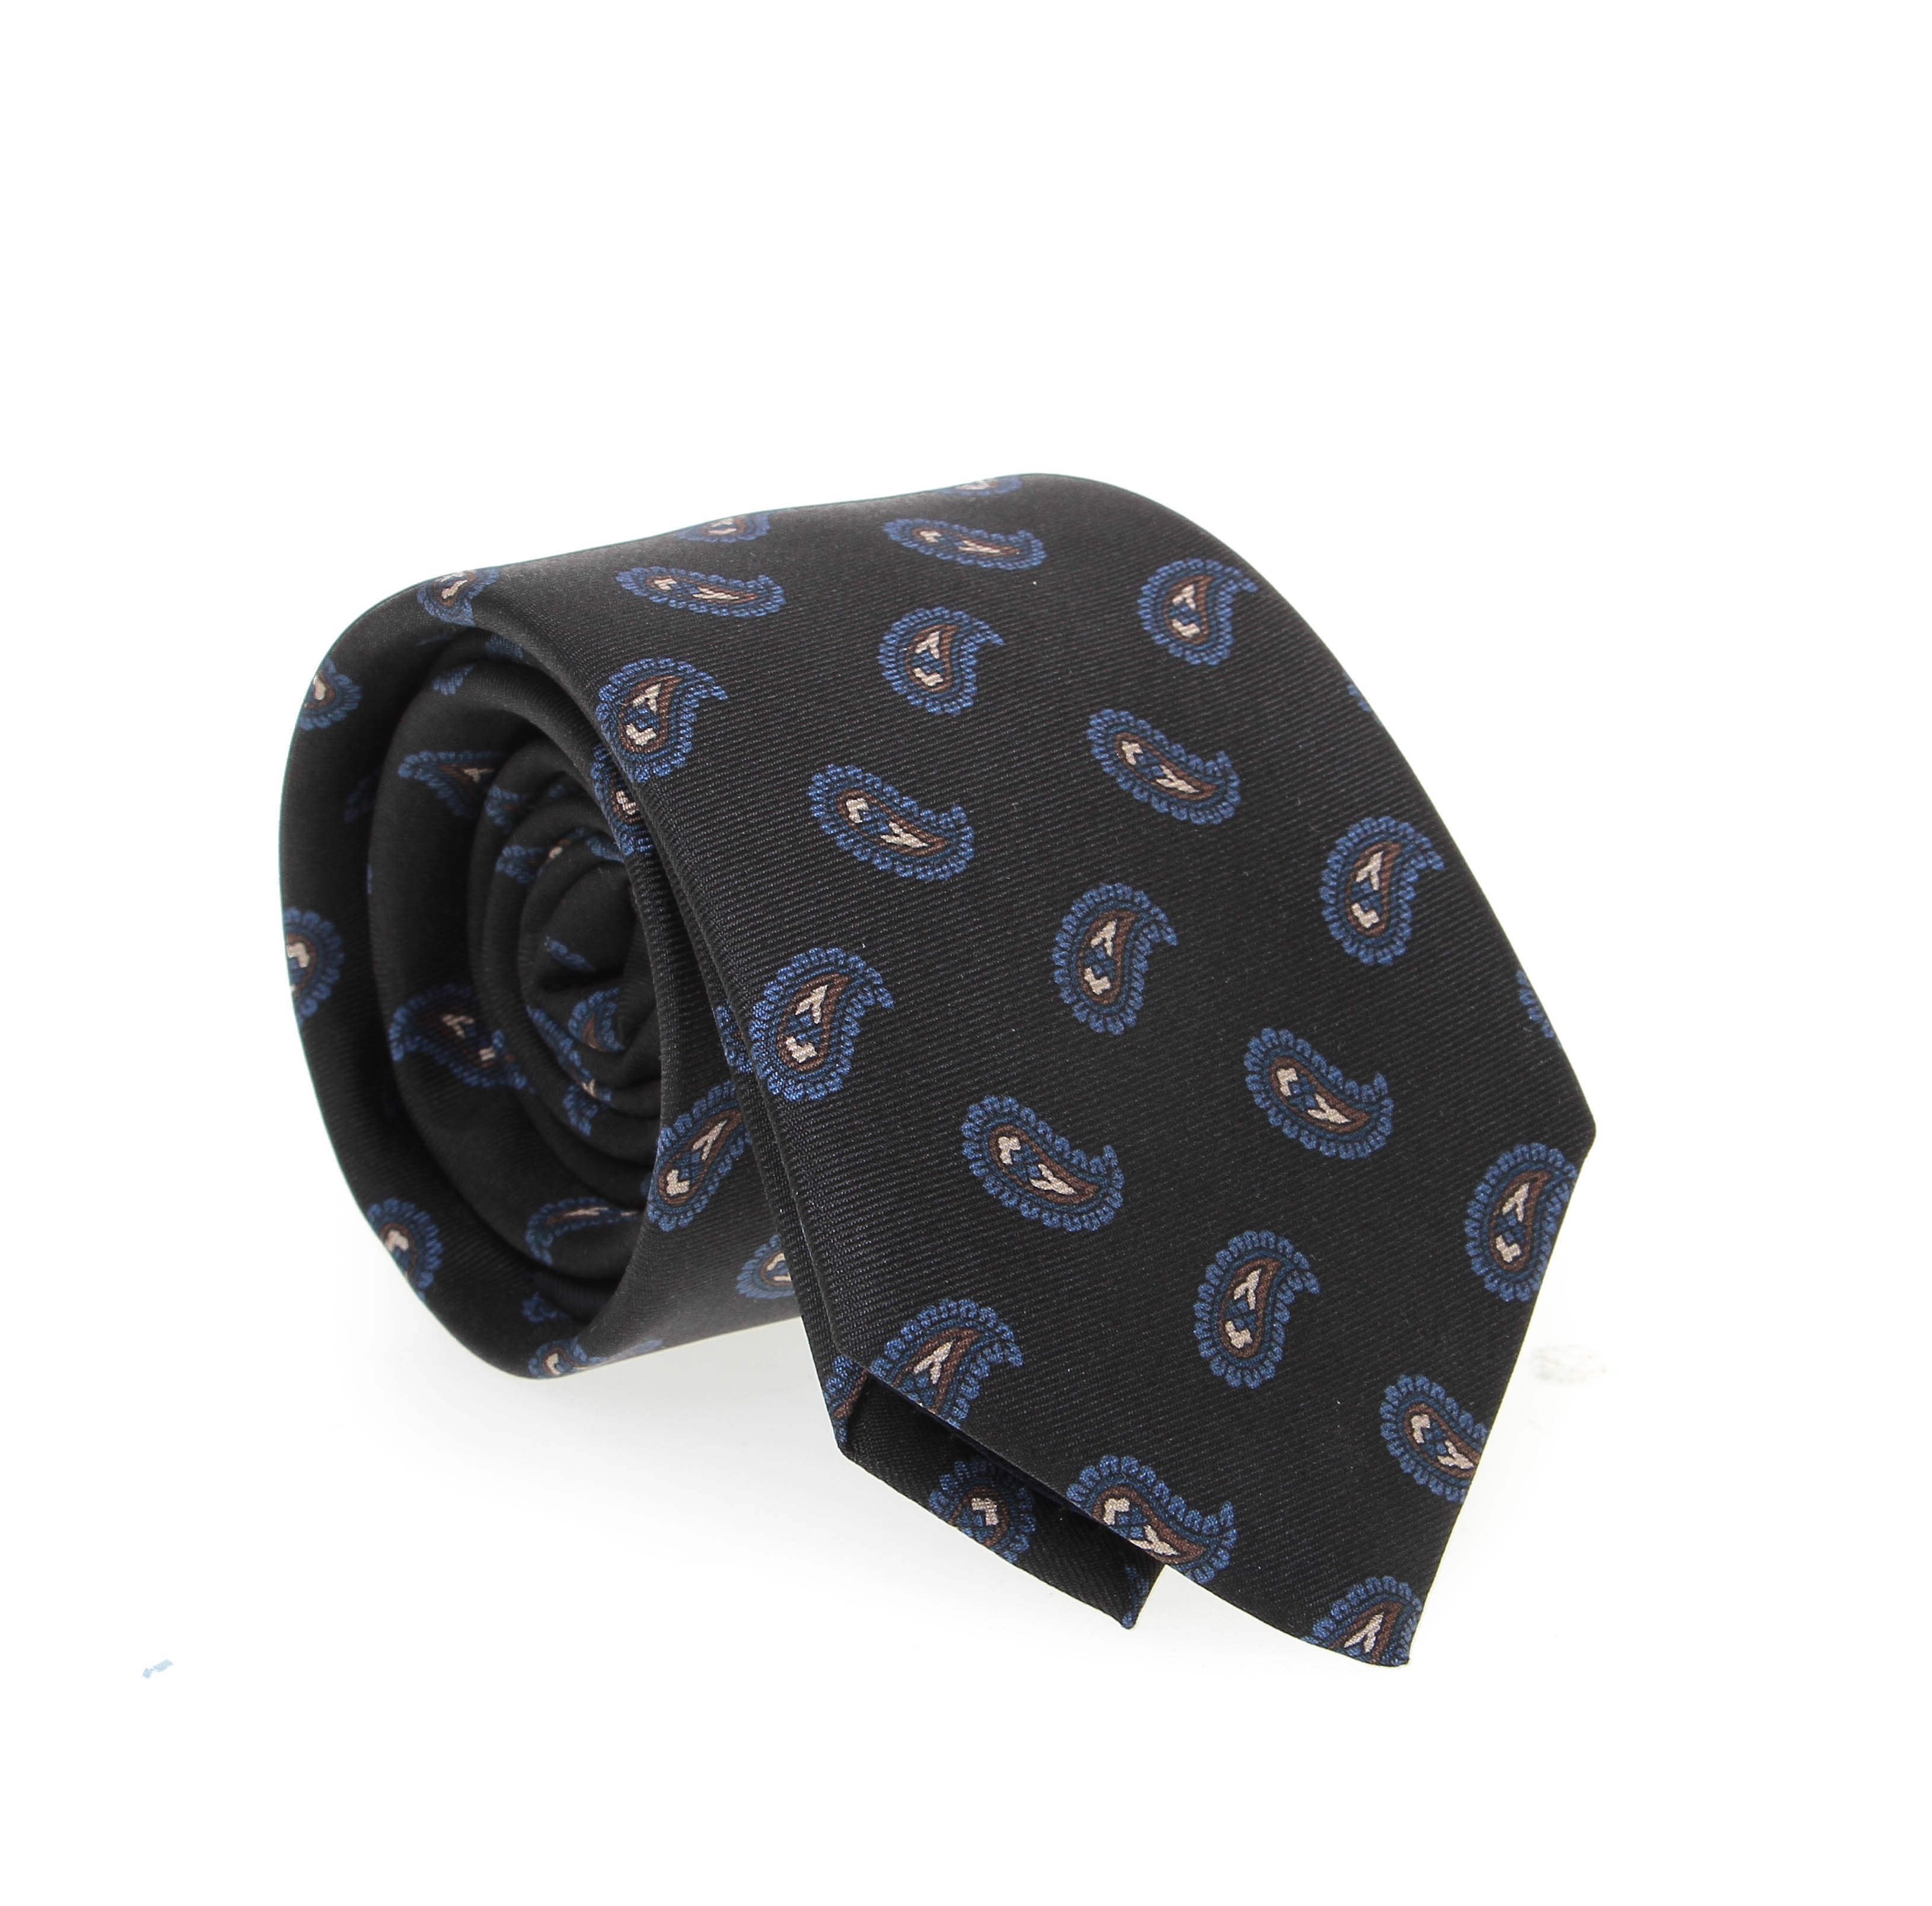 Cravate en soie : Base noire à motifs bleus